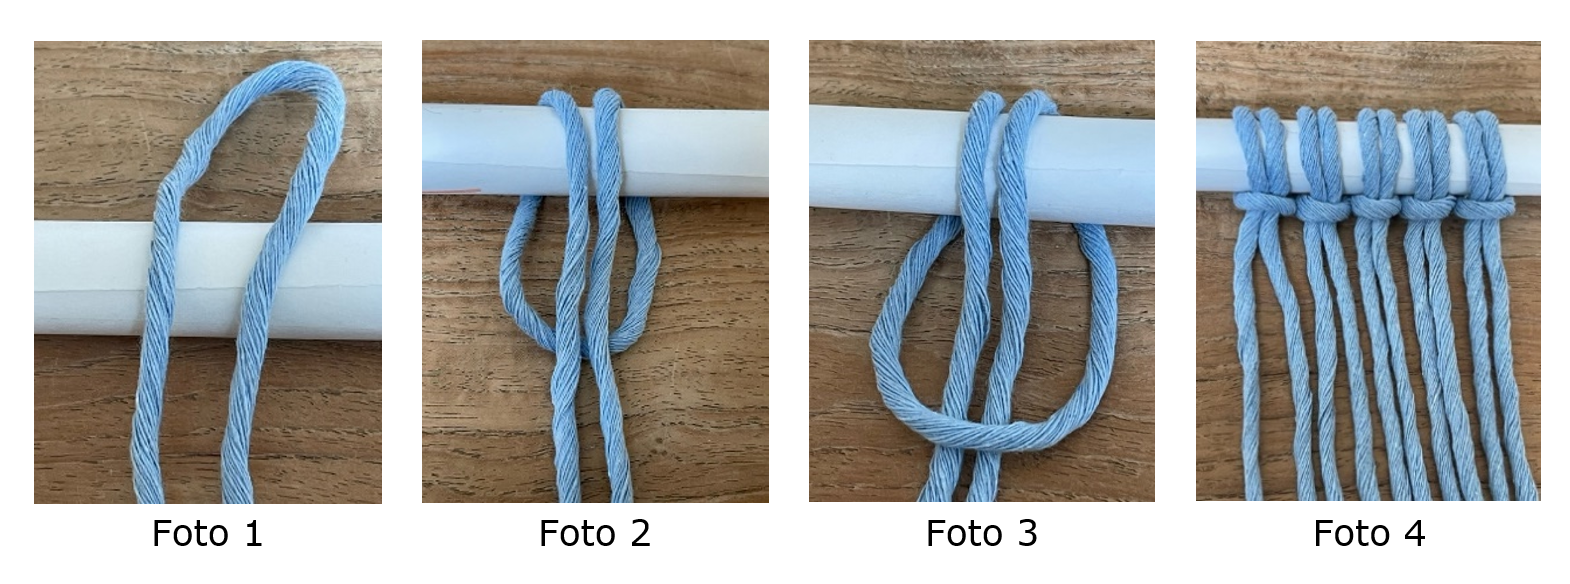 De basisknoop afgebeeld in 4 verschillende
stappen.